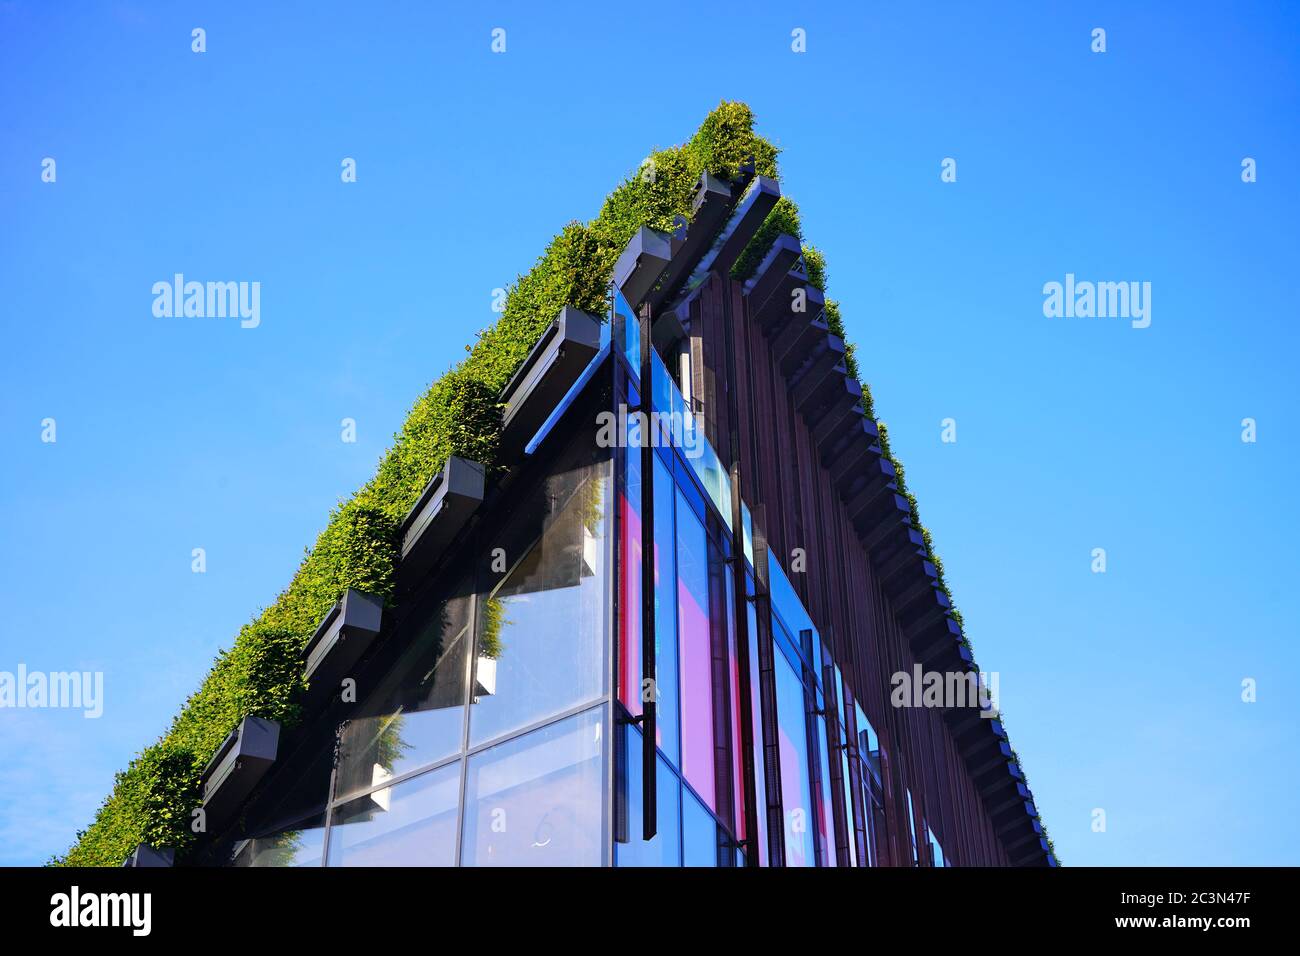 Détail d'un bâtiment qui a été couvert par Ingenhoven Architects avec des haies de charme. Le projet de la ville de la région de la ville est le projet de rendre la ville plus verte. Banque D'Images